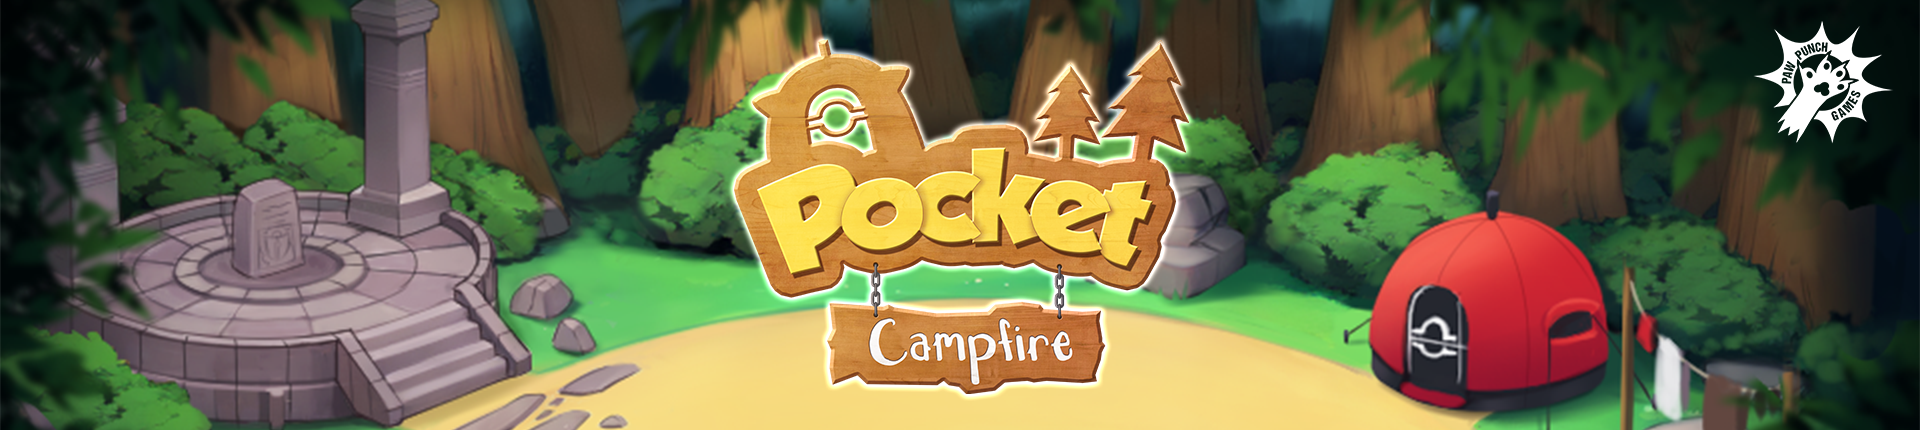 Pocket Campfire